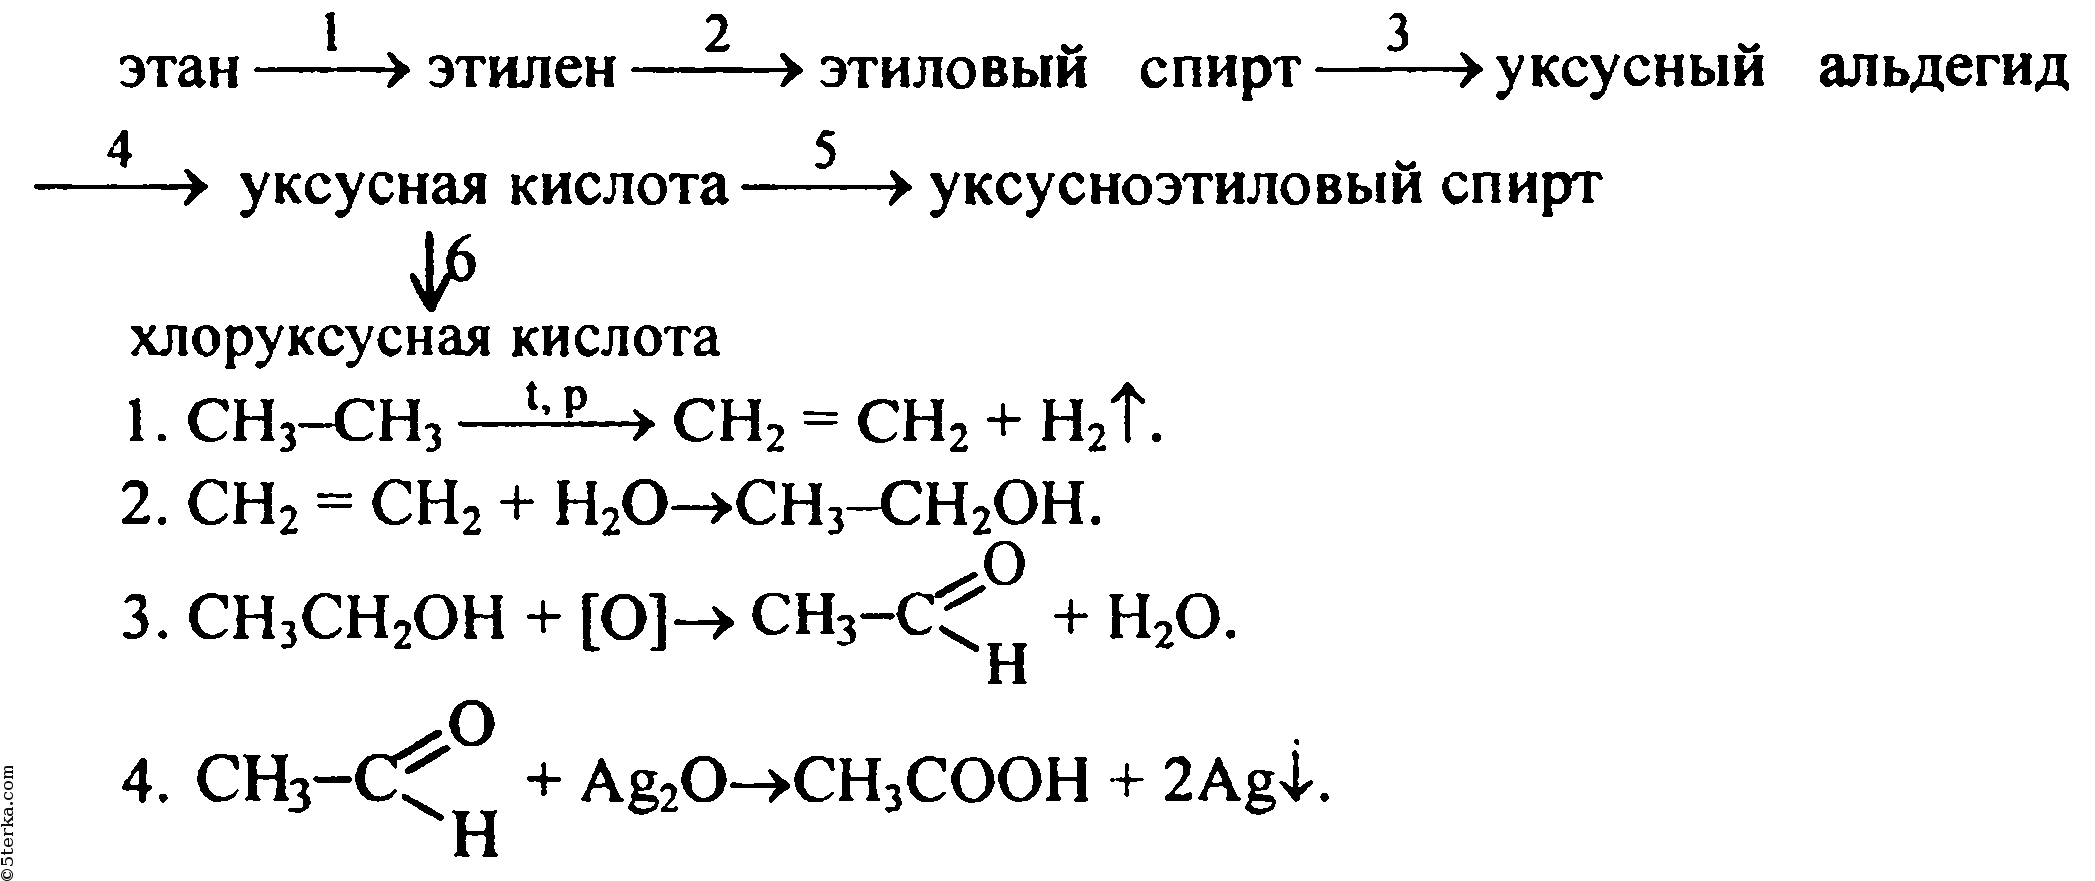 Этан бутан изобутан. Схема получения альдегидов из метана. Схема реакции уксусной кислоты.